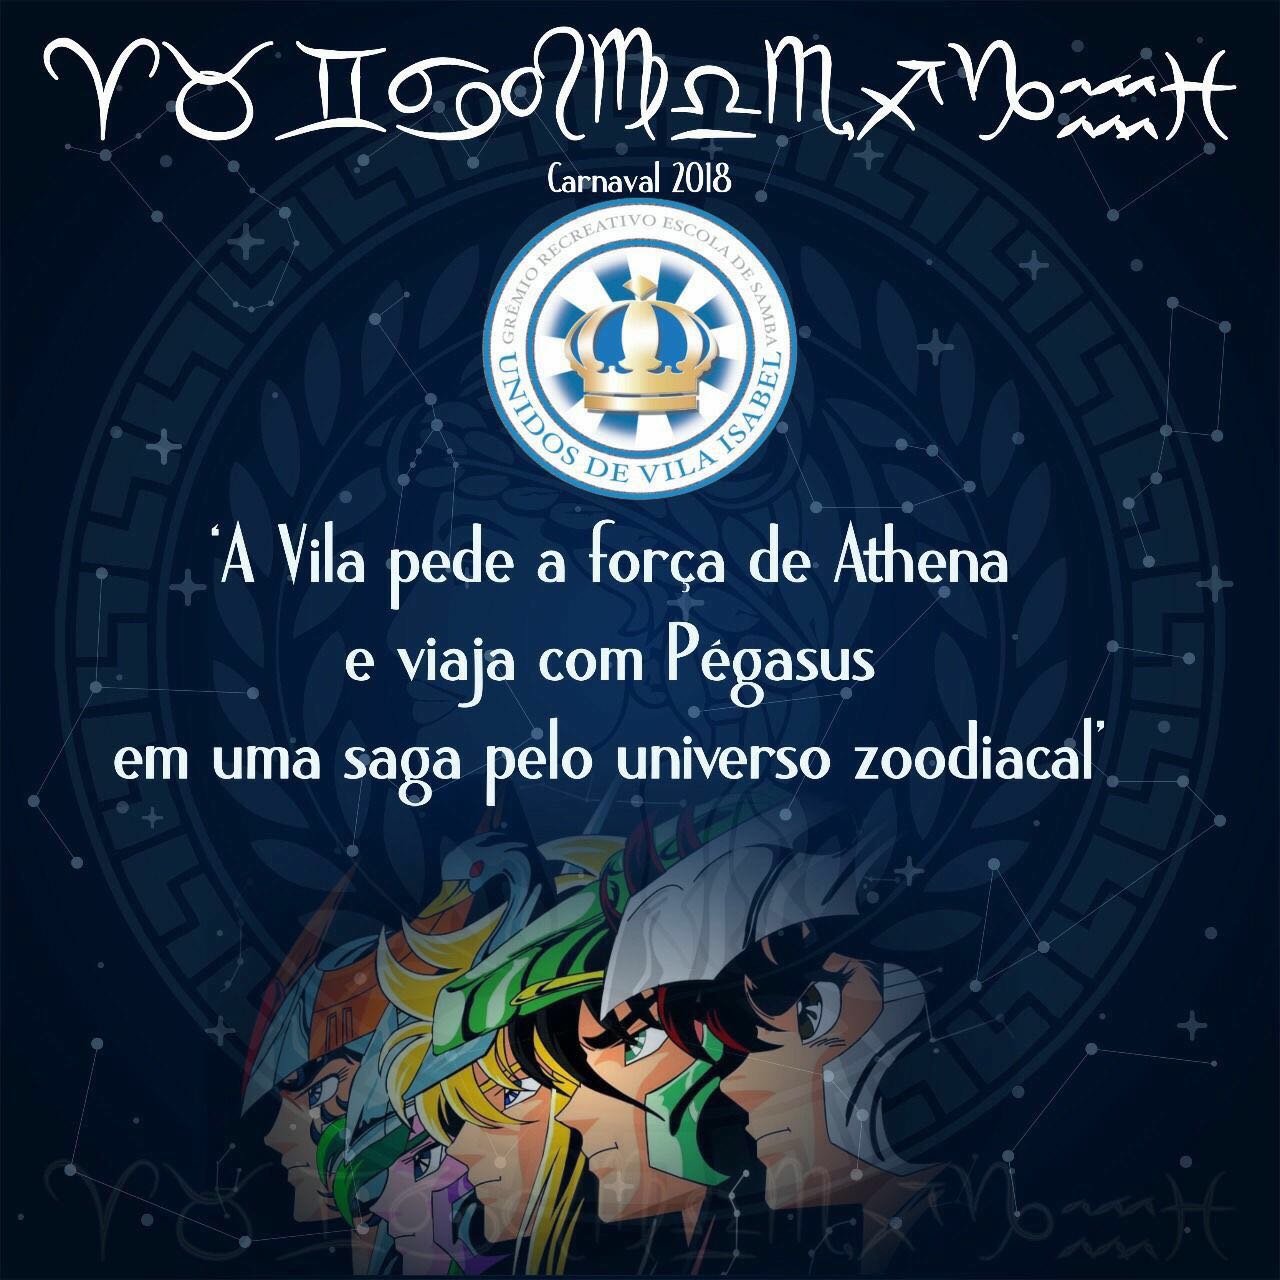 Logotipo falso do enredo da Vila Isabel. Foto: Reprodução